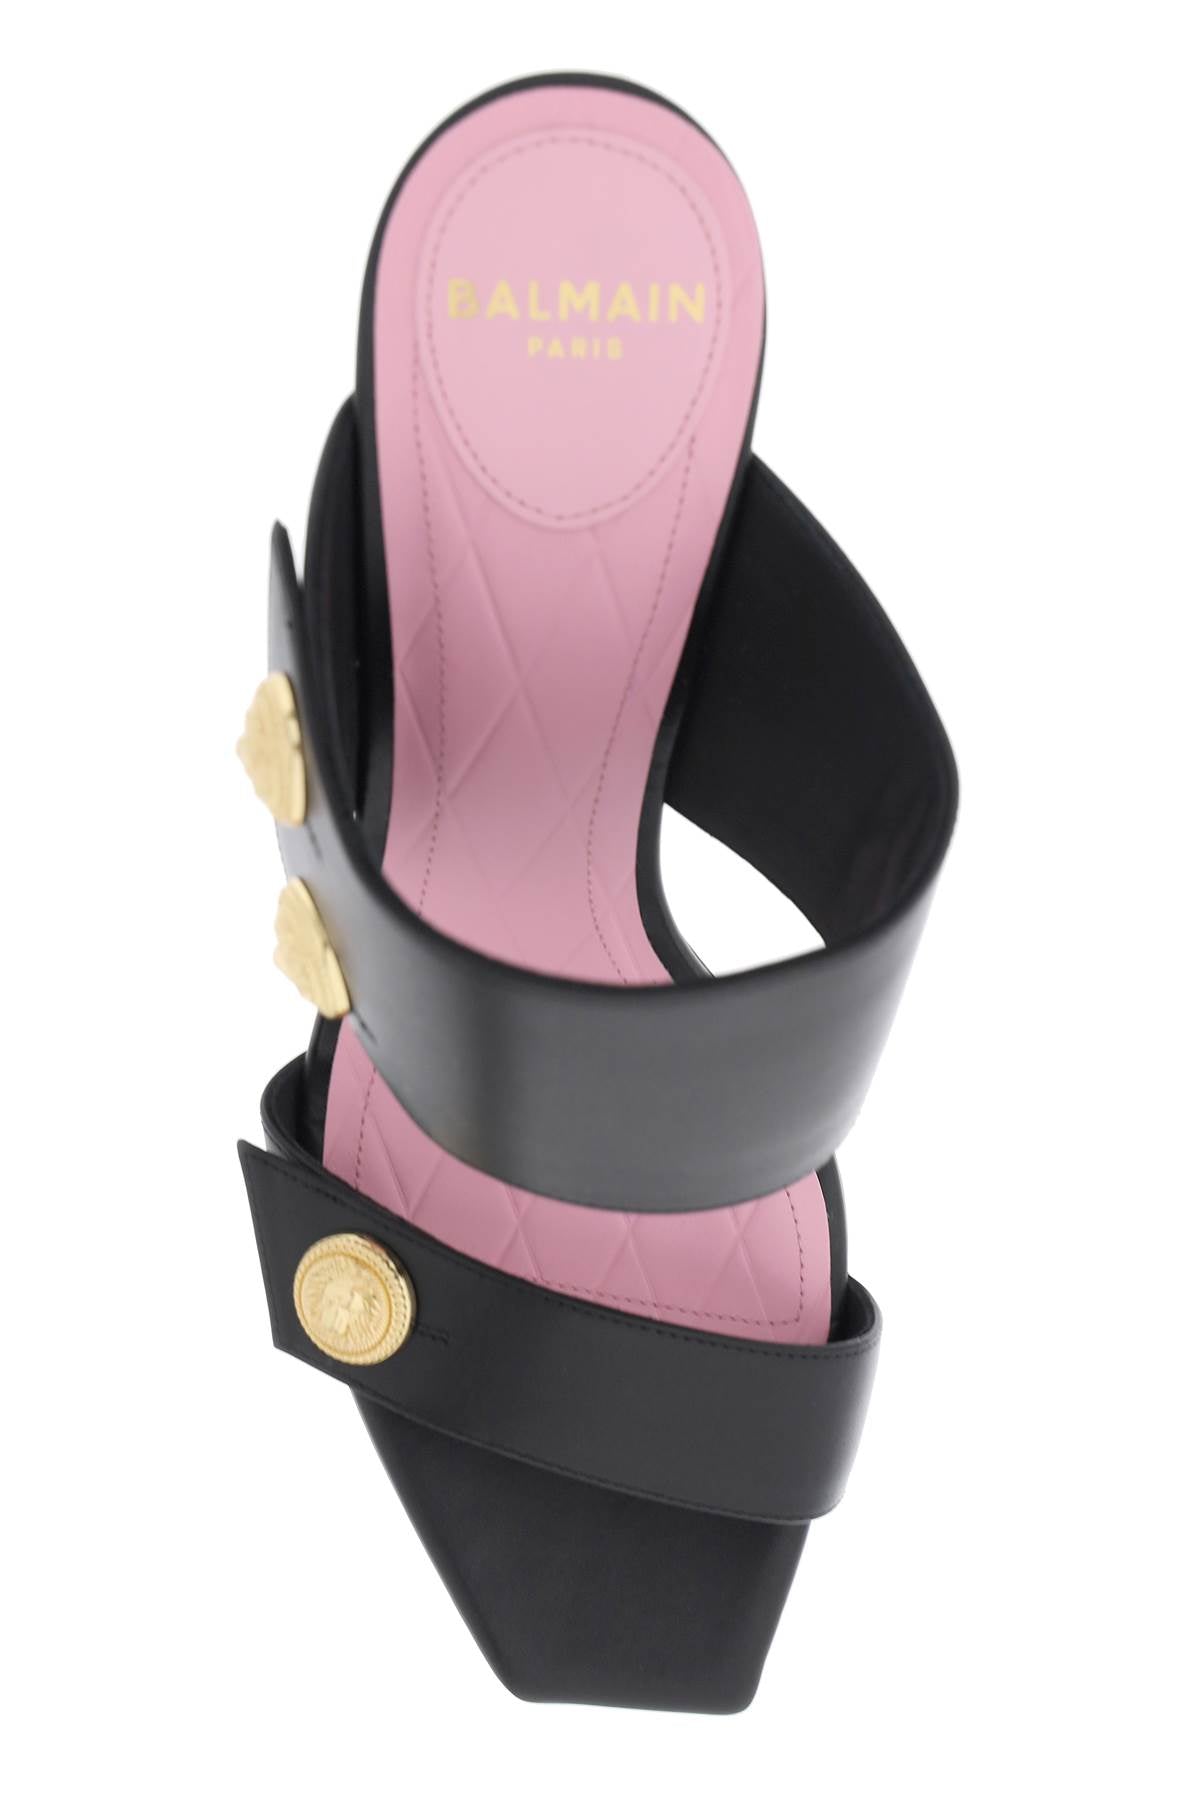 BALMAIN Black Double Strap Sandals with Lion Head Buttons